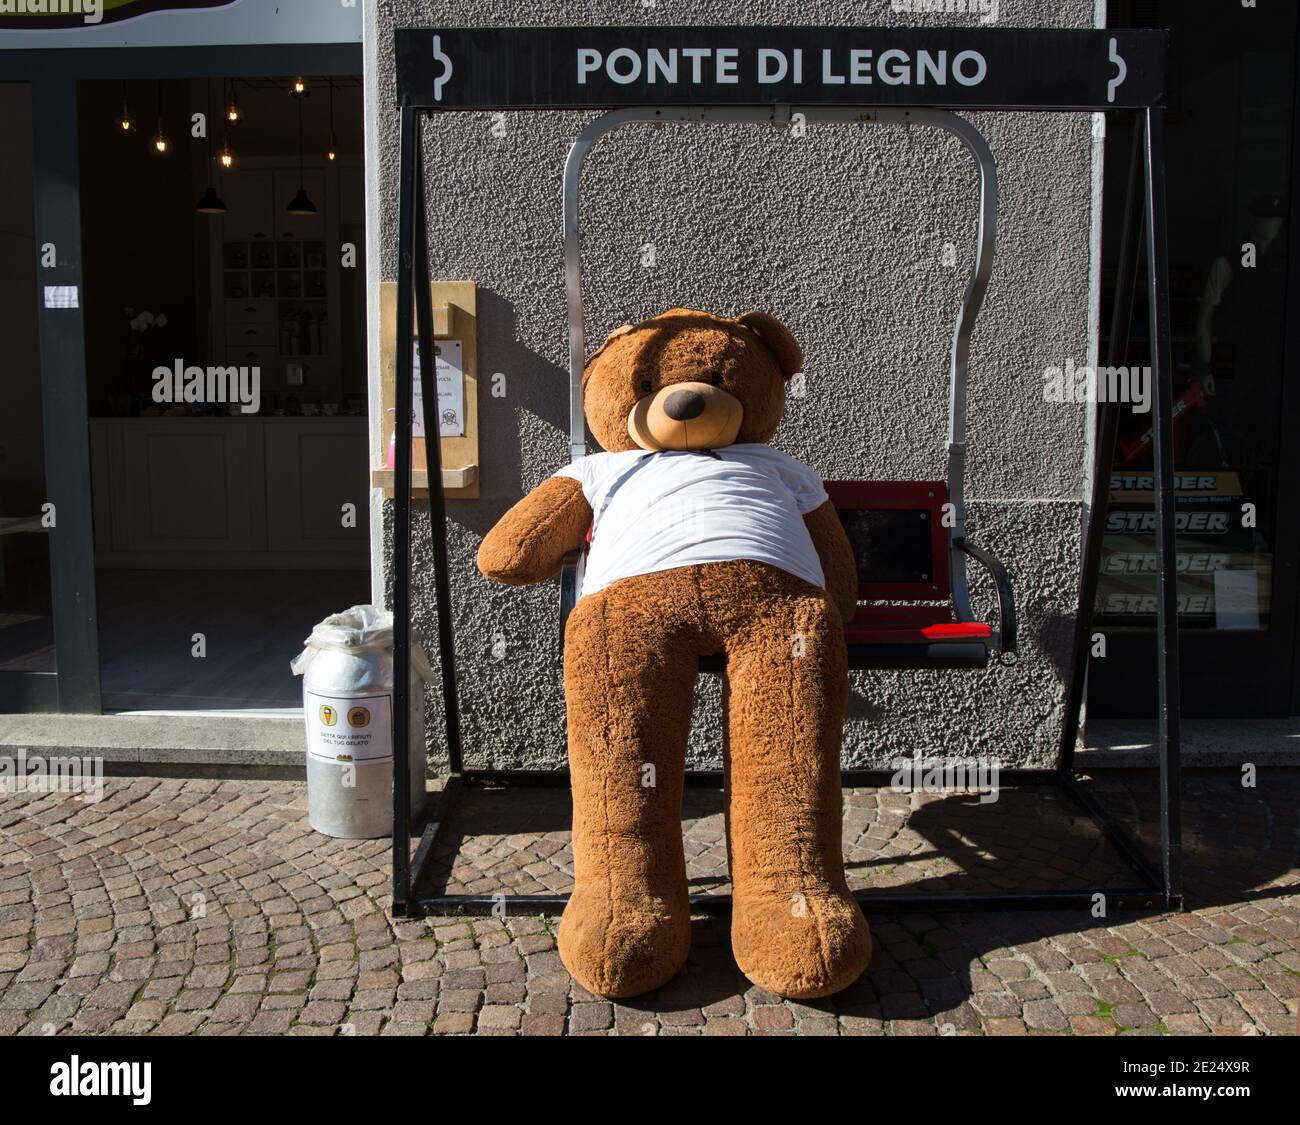 PONTE DI LEGNO, ITALIEN, 9. SEPTEMBER 2020 - EIN Teddybär auf einem Schaukelstuhl vor einem Geschäft im Dorf Ponte di Legno, Provinz Brescia, Italien. Stockfoto